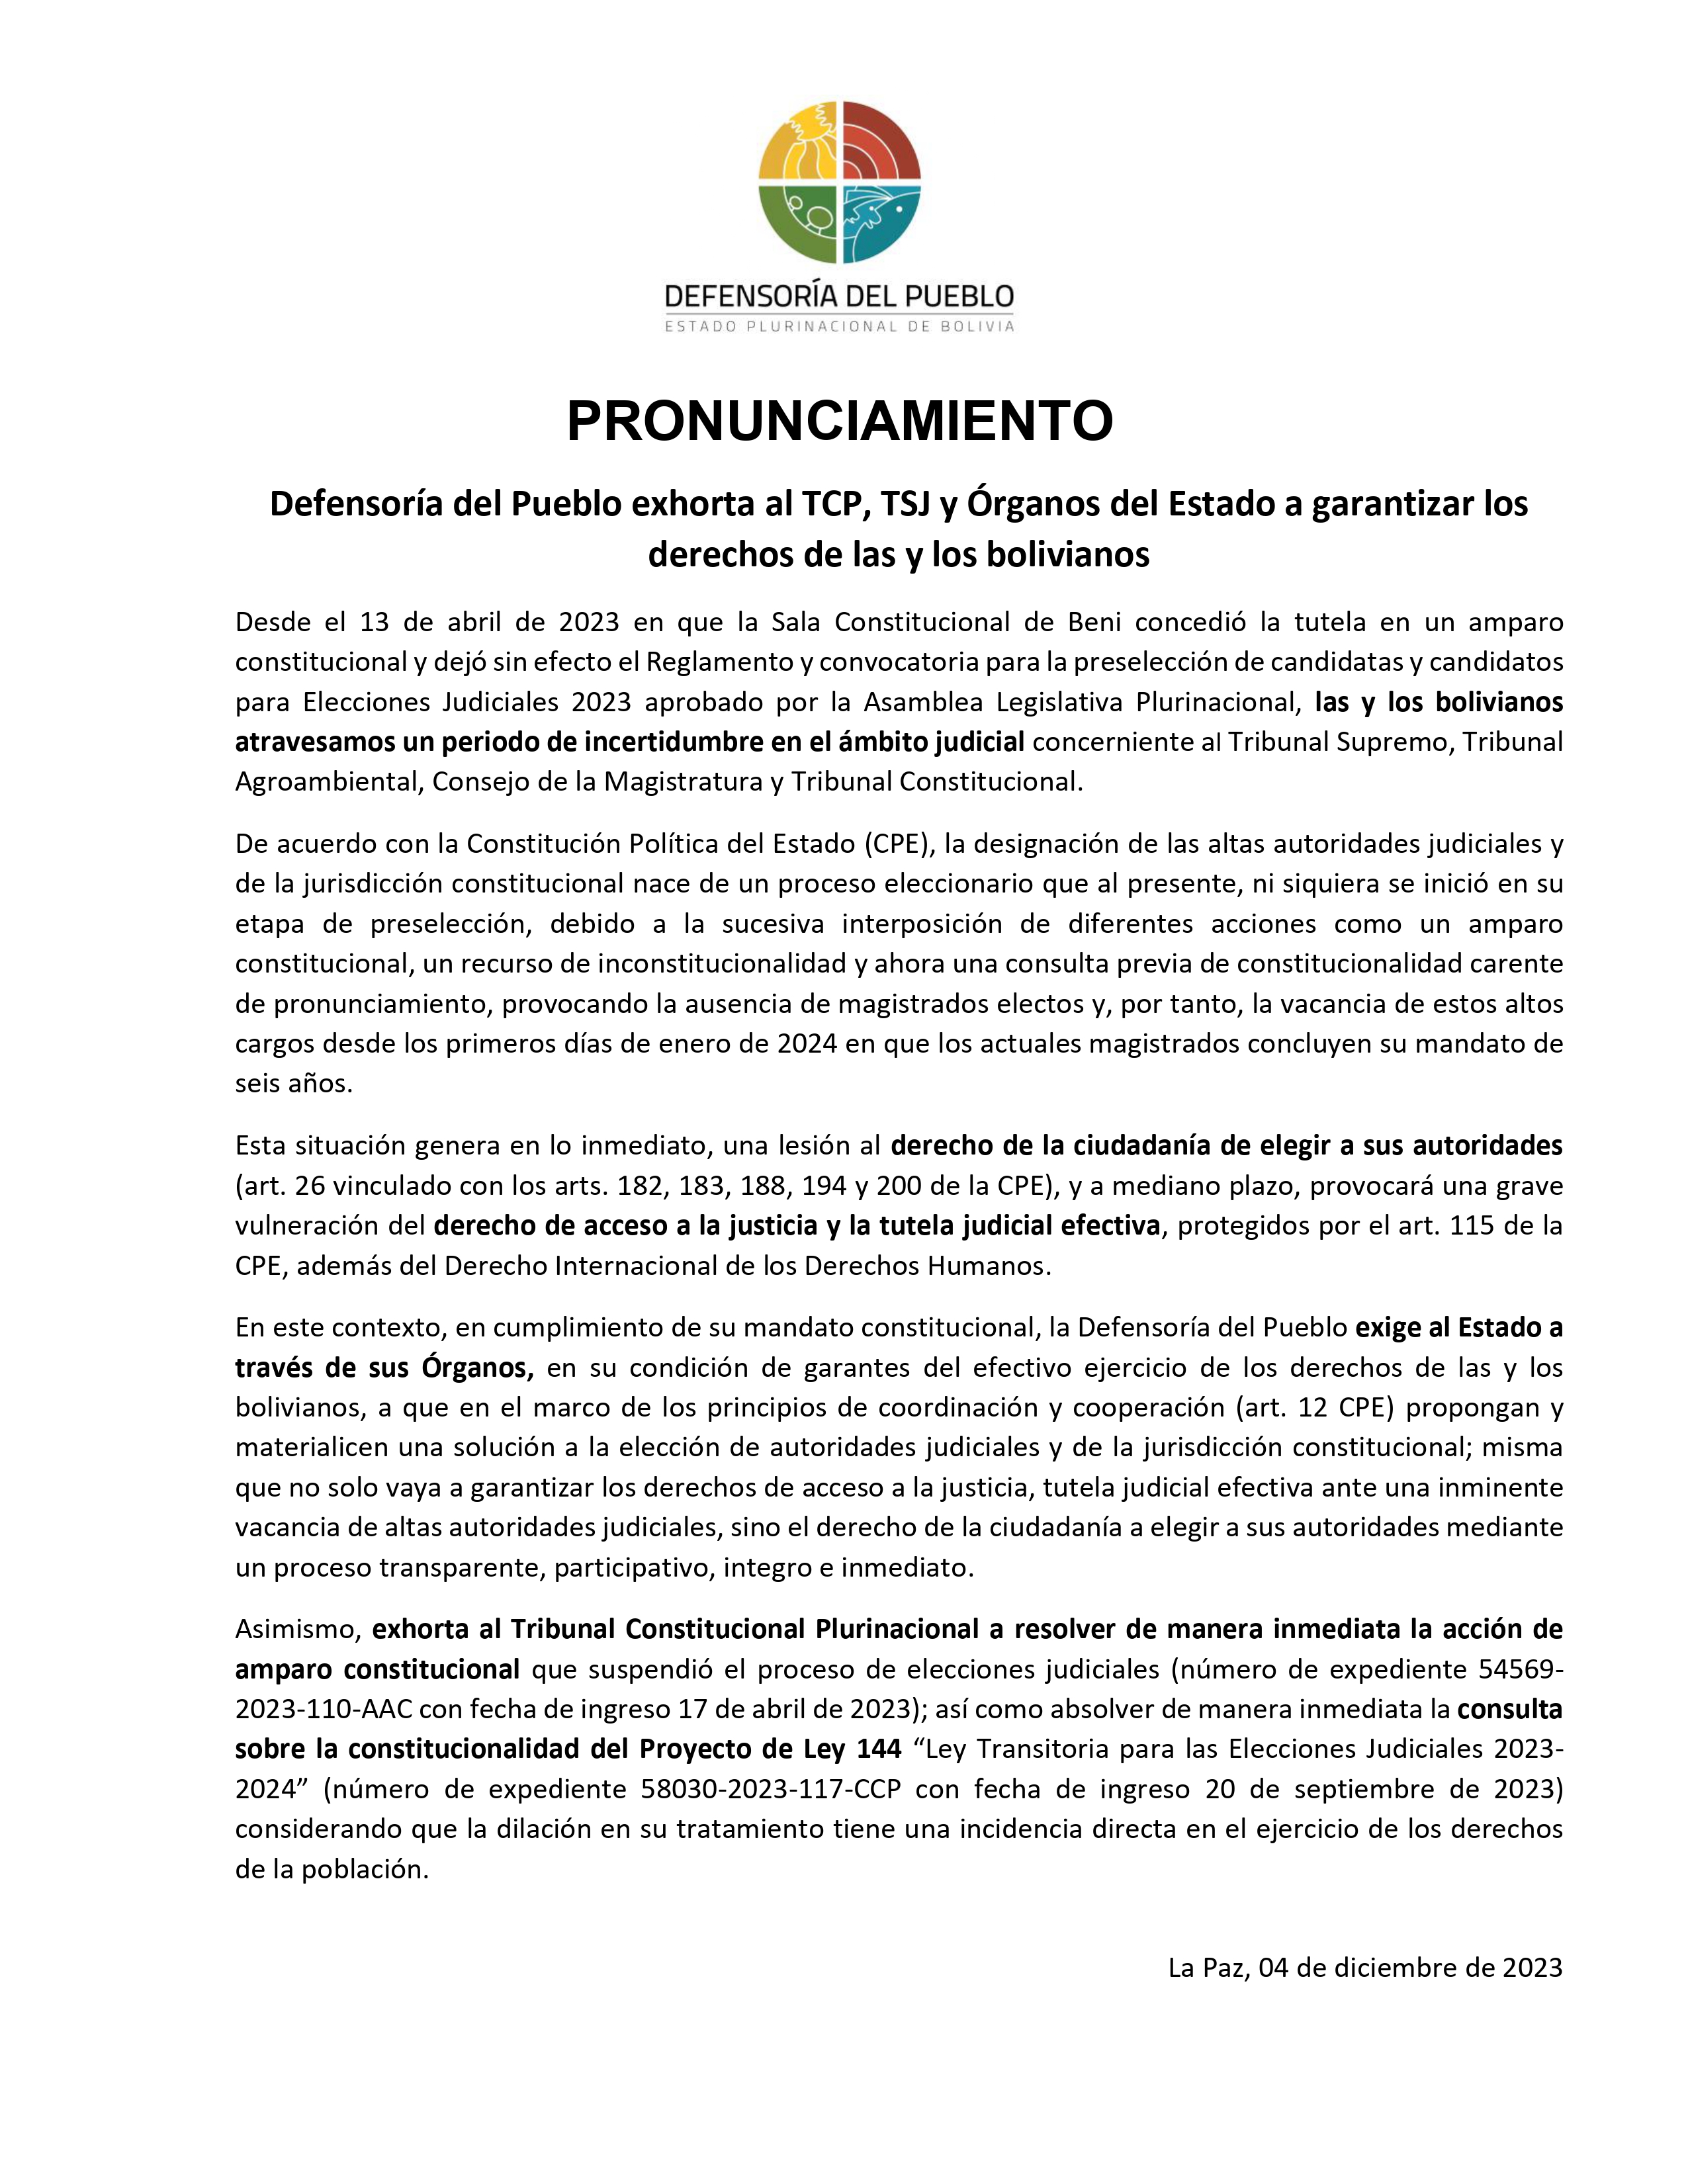 Defensoría del Pueblo exhorta al TCP, TSJ y Órganos del Estado a garantizar los derechos de las y los bolivianos